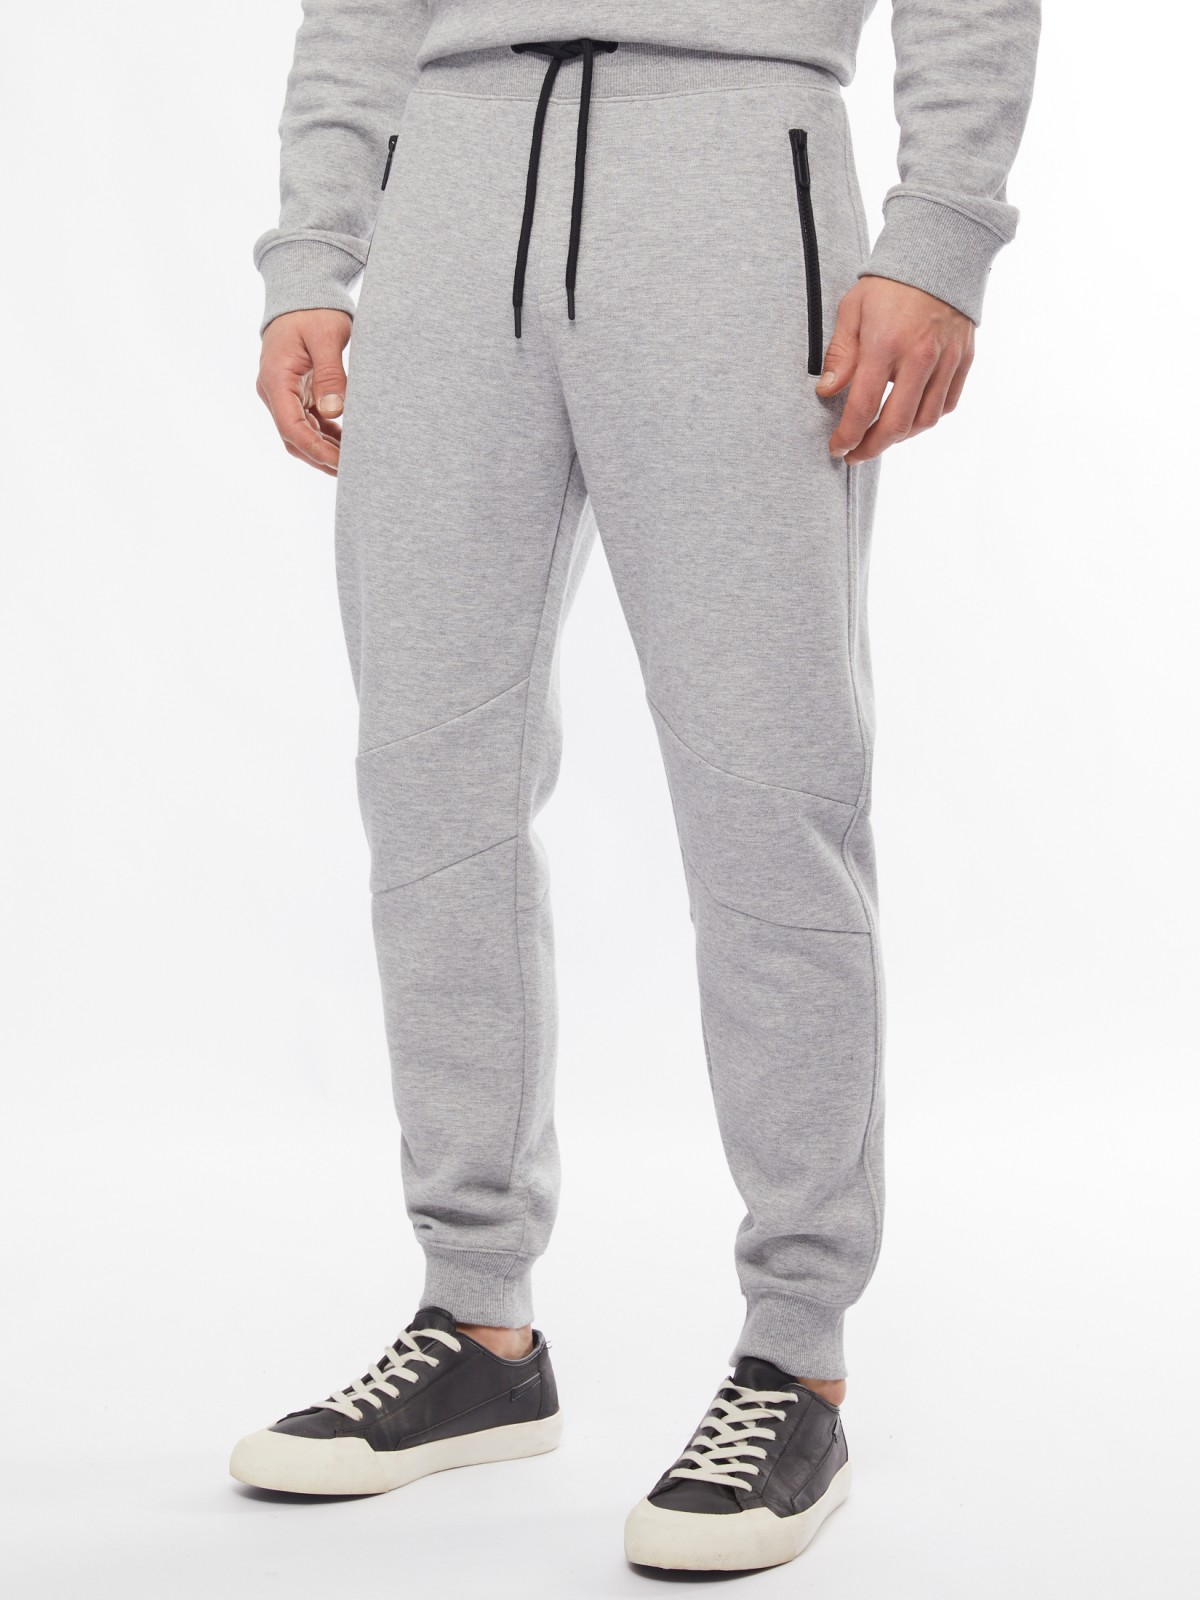 Трикотажные брюки-джоггеры в спортивном стиле zolla 014217679033, цвет серый, размер M - фото 2